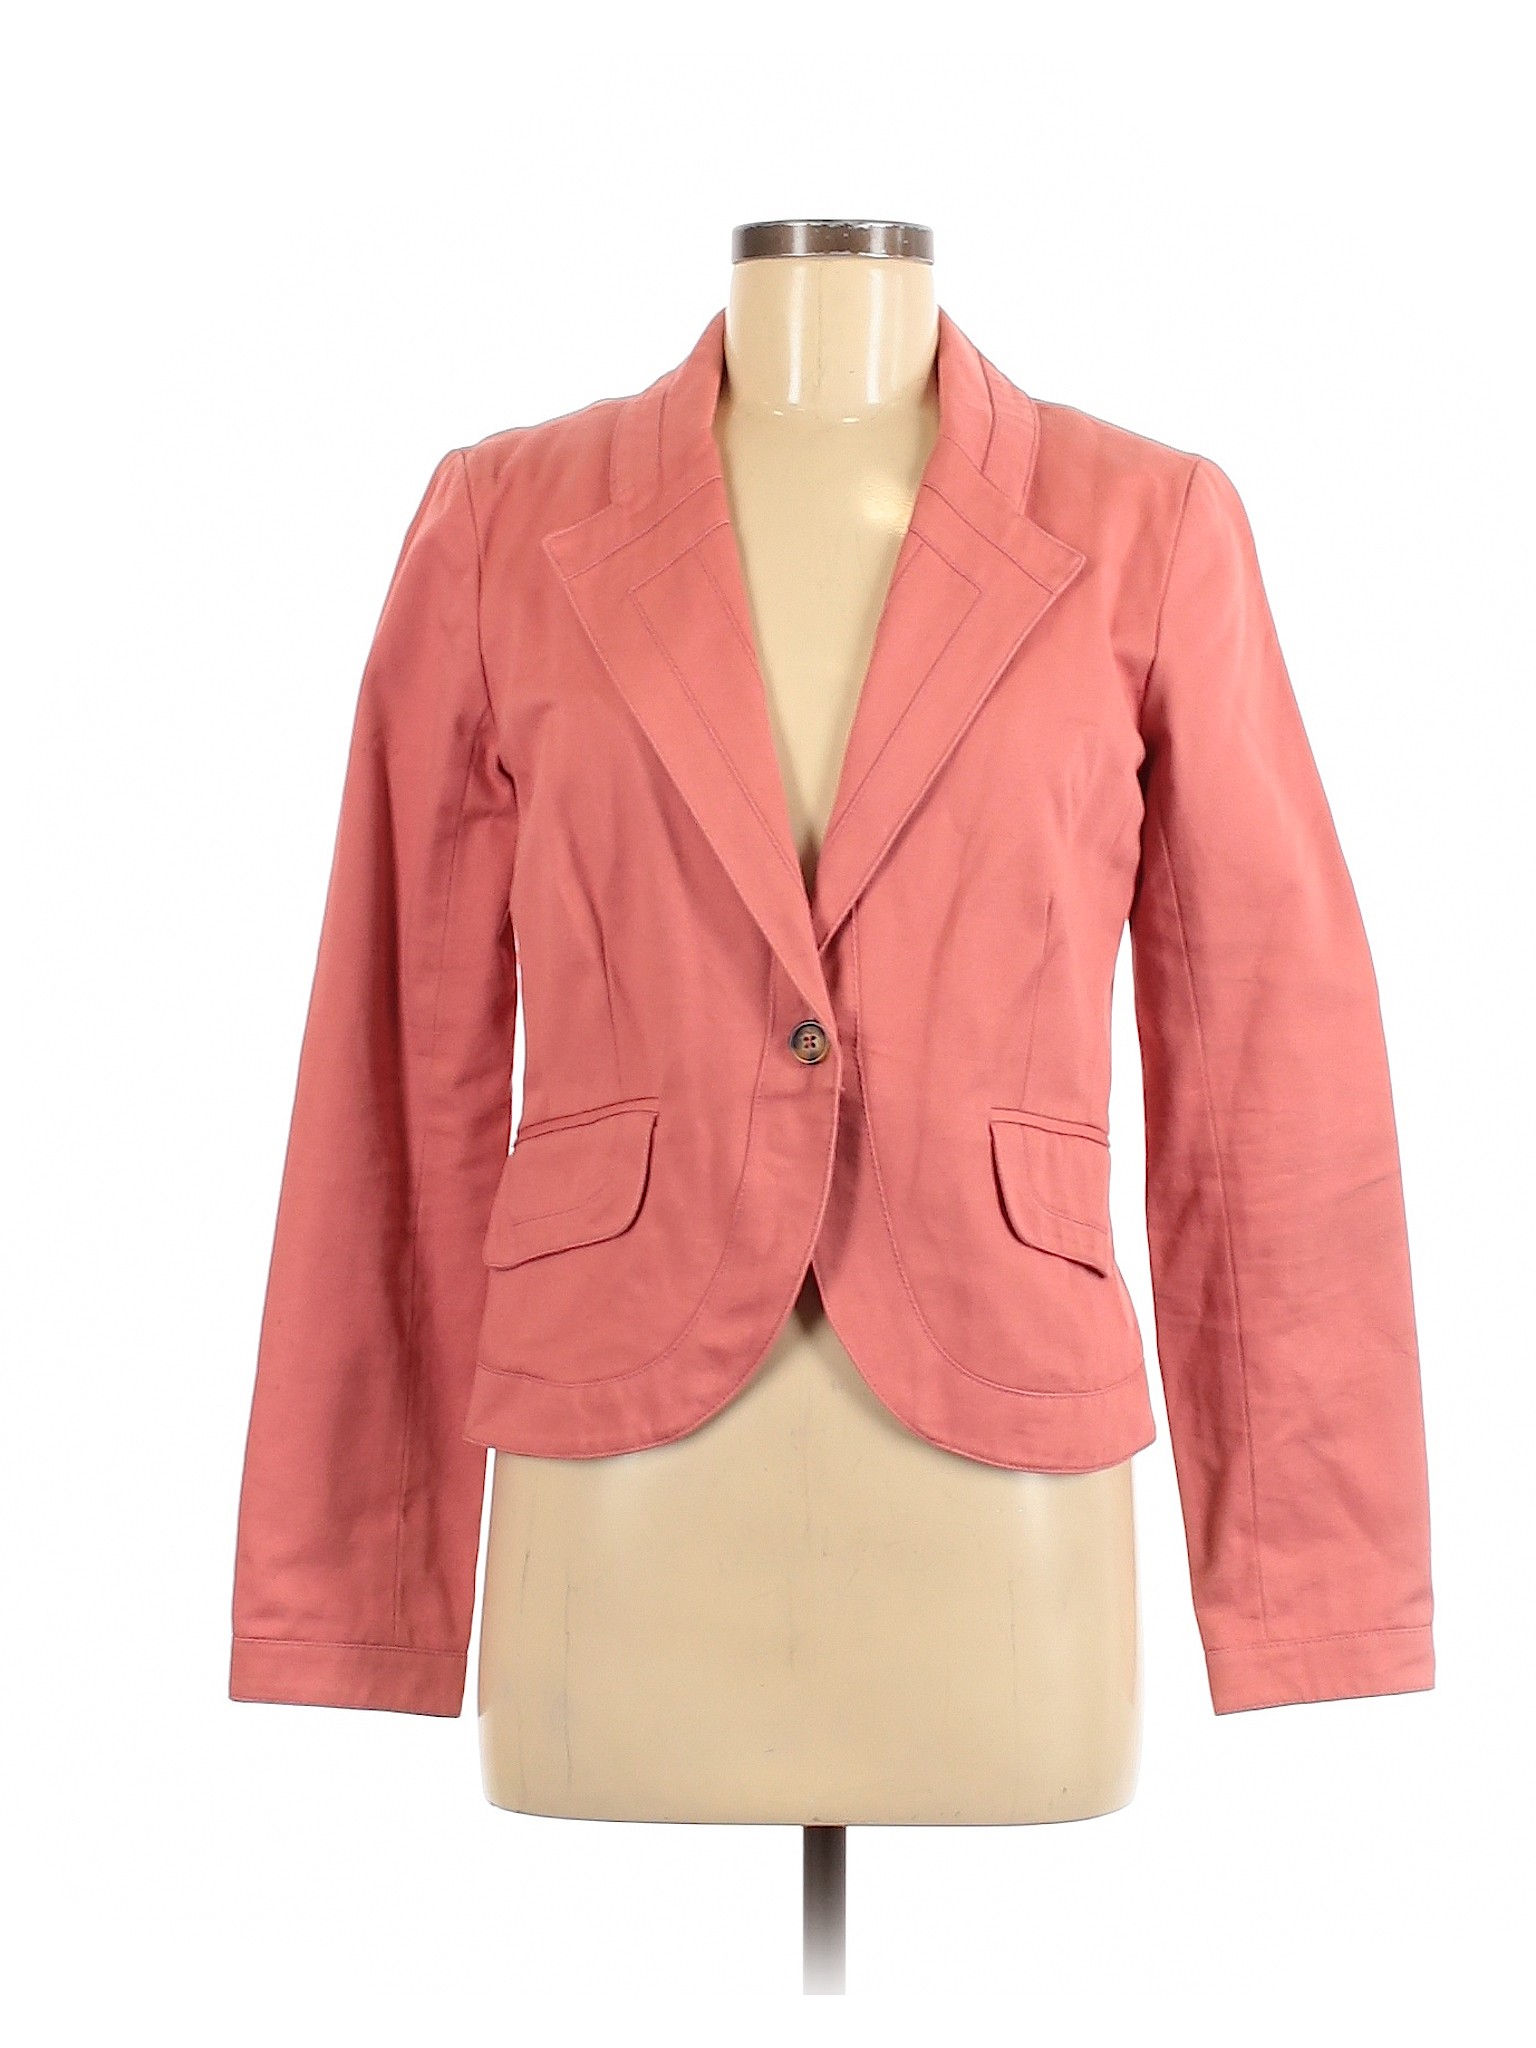 Proenza Schouler for Target Women Pink Jacket M | eBay